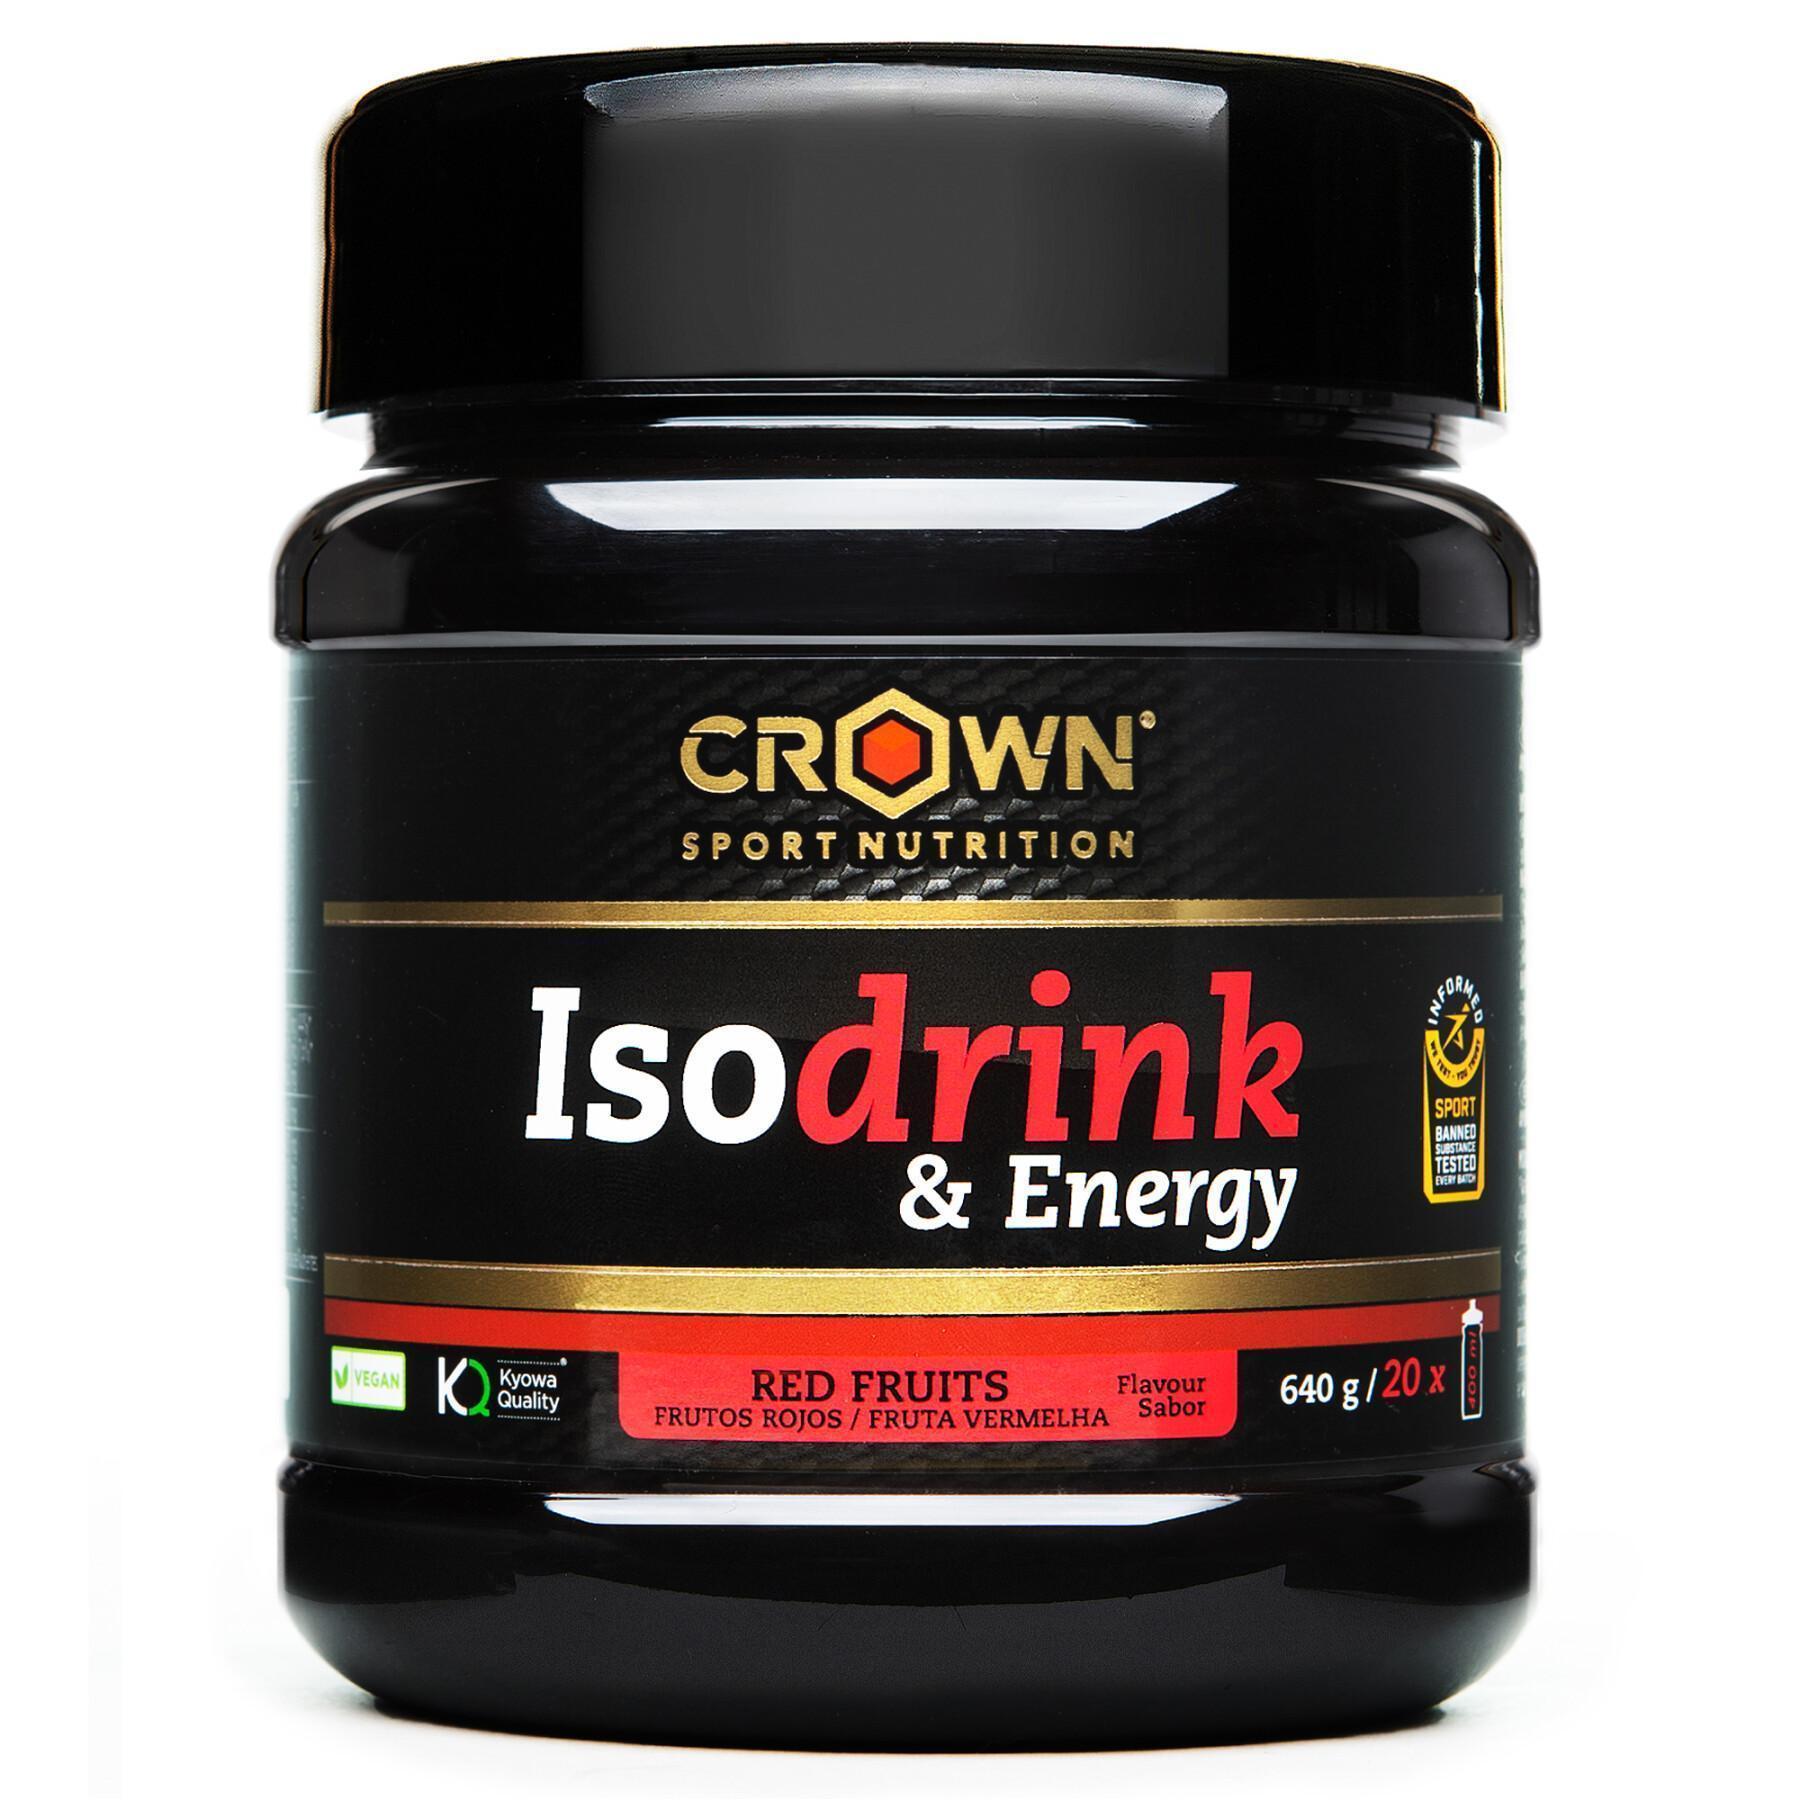 Boisson énergétique Crown Sport Nutrition Isodrink & Energy informed sport - fruits rouges - 640 g